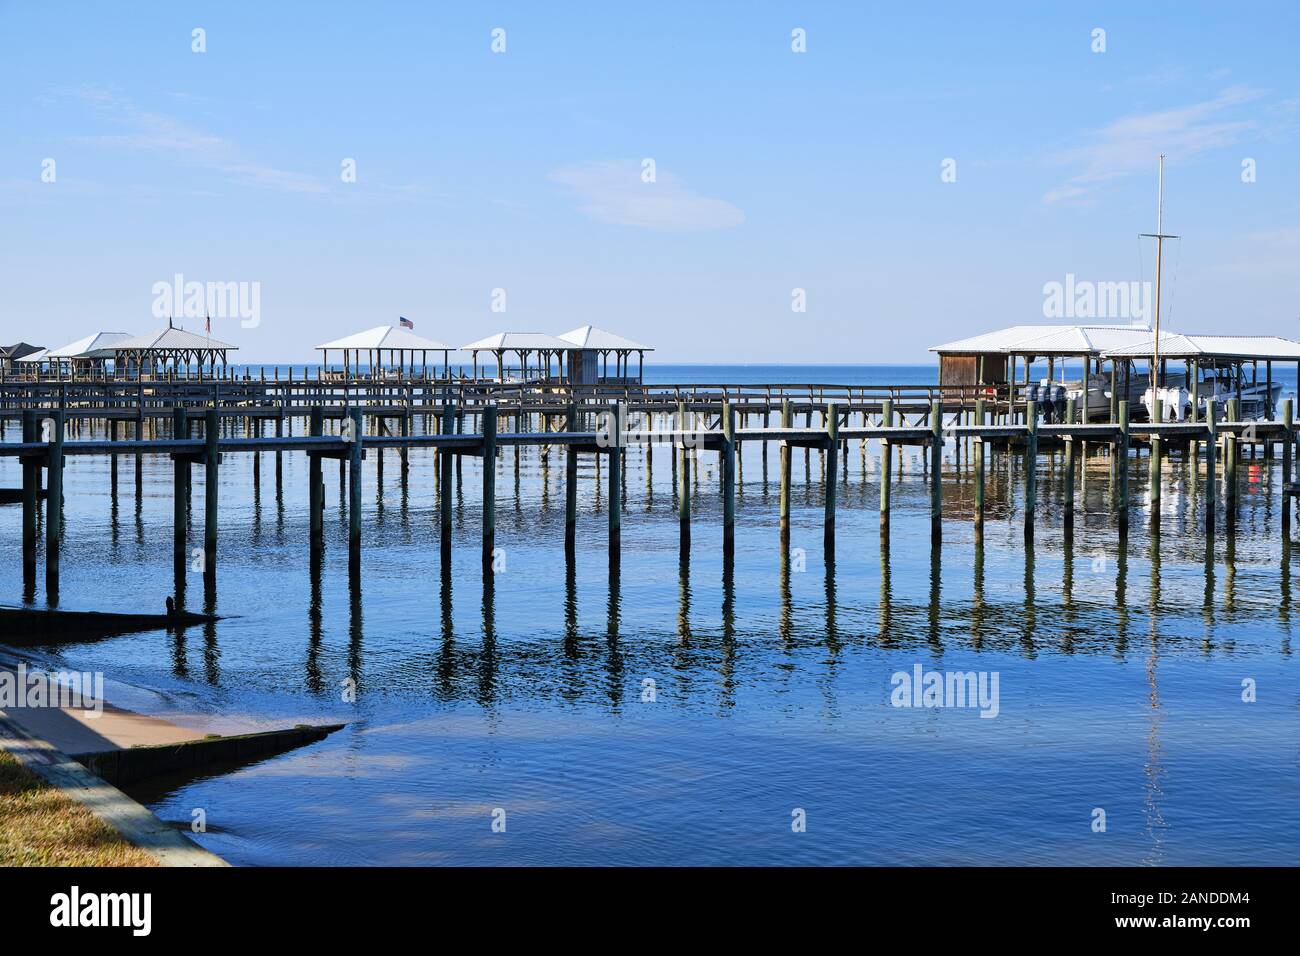 Case in barca o barca ascensori e dock in aggetto in acqua nel punto Chiaro Alabama sulla sponda orientale del Mobile Bay, Stati Uniti d'America. Foto Stock